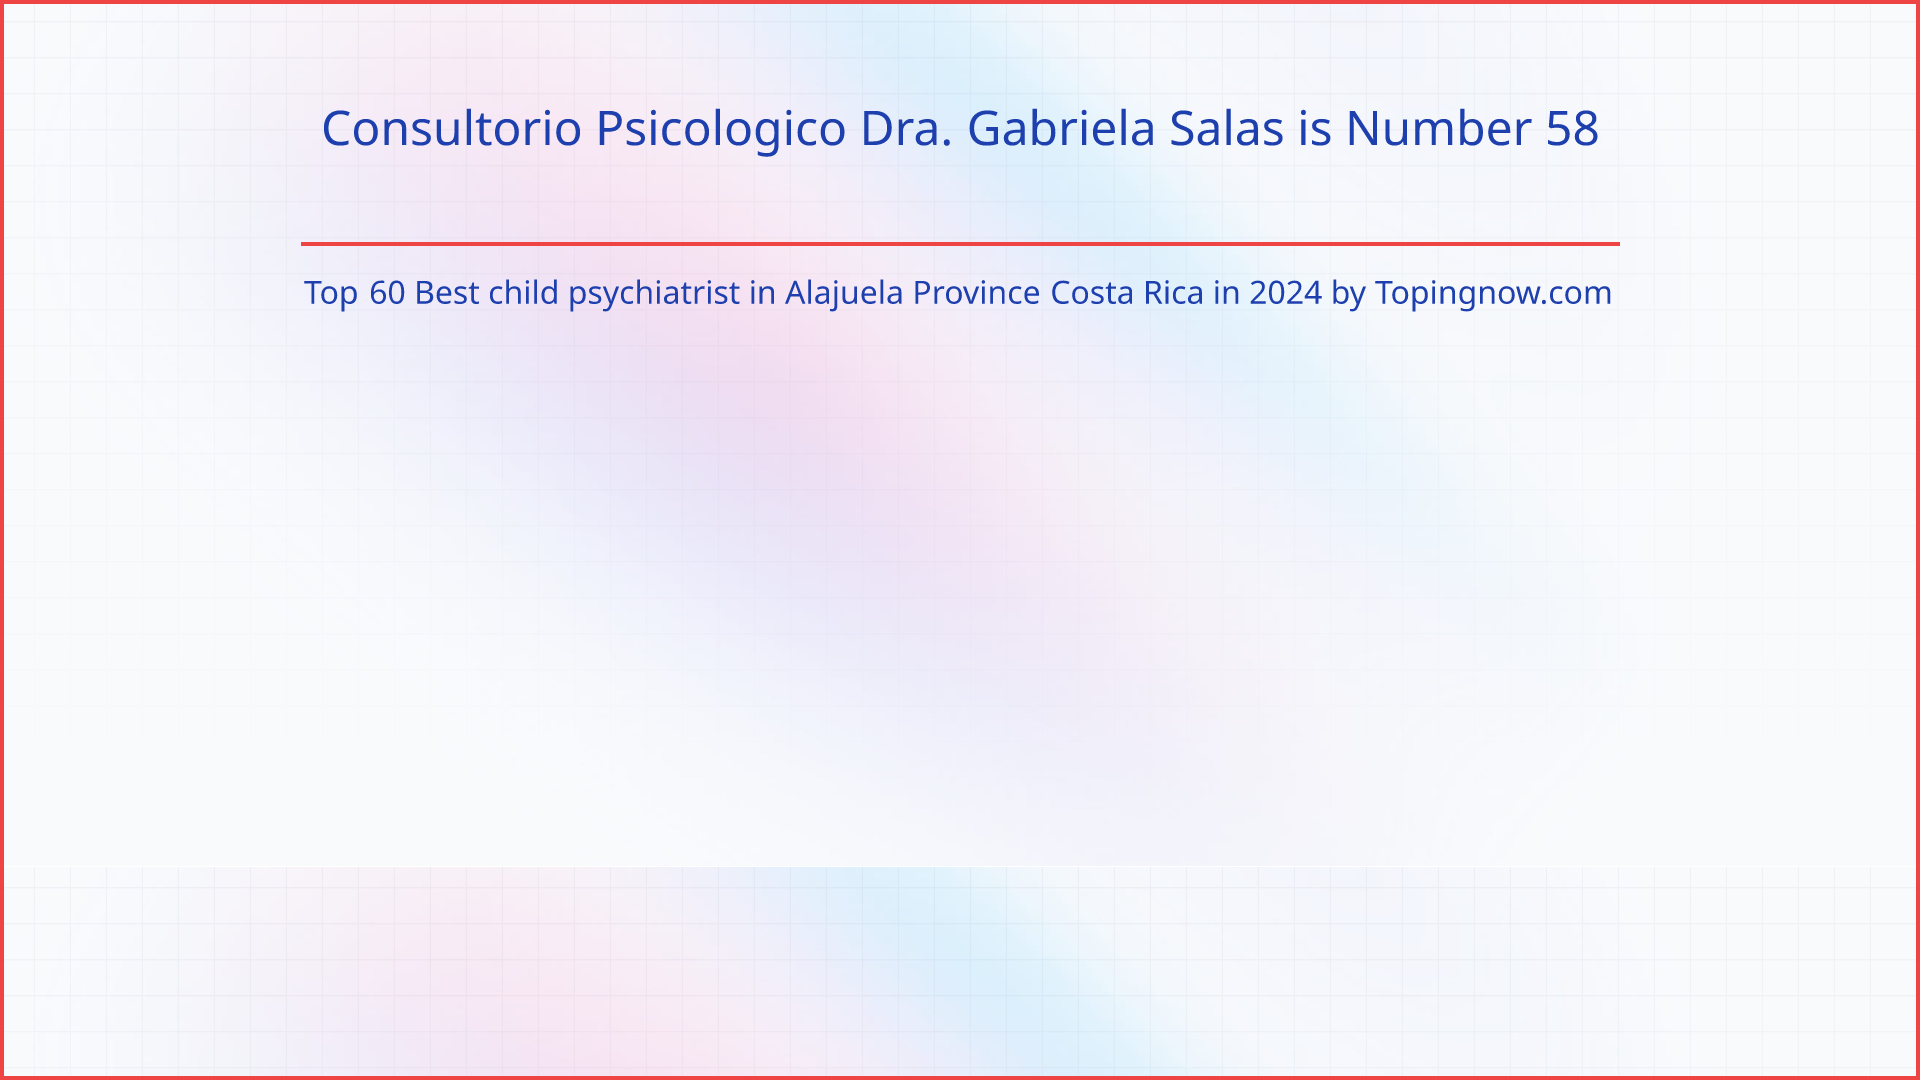 Consultorio Psicologico Dra. Gabriela Salas: Top 60 Best child psychiatrist in Alajuela Province Costa Rica in 2024